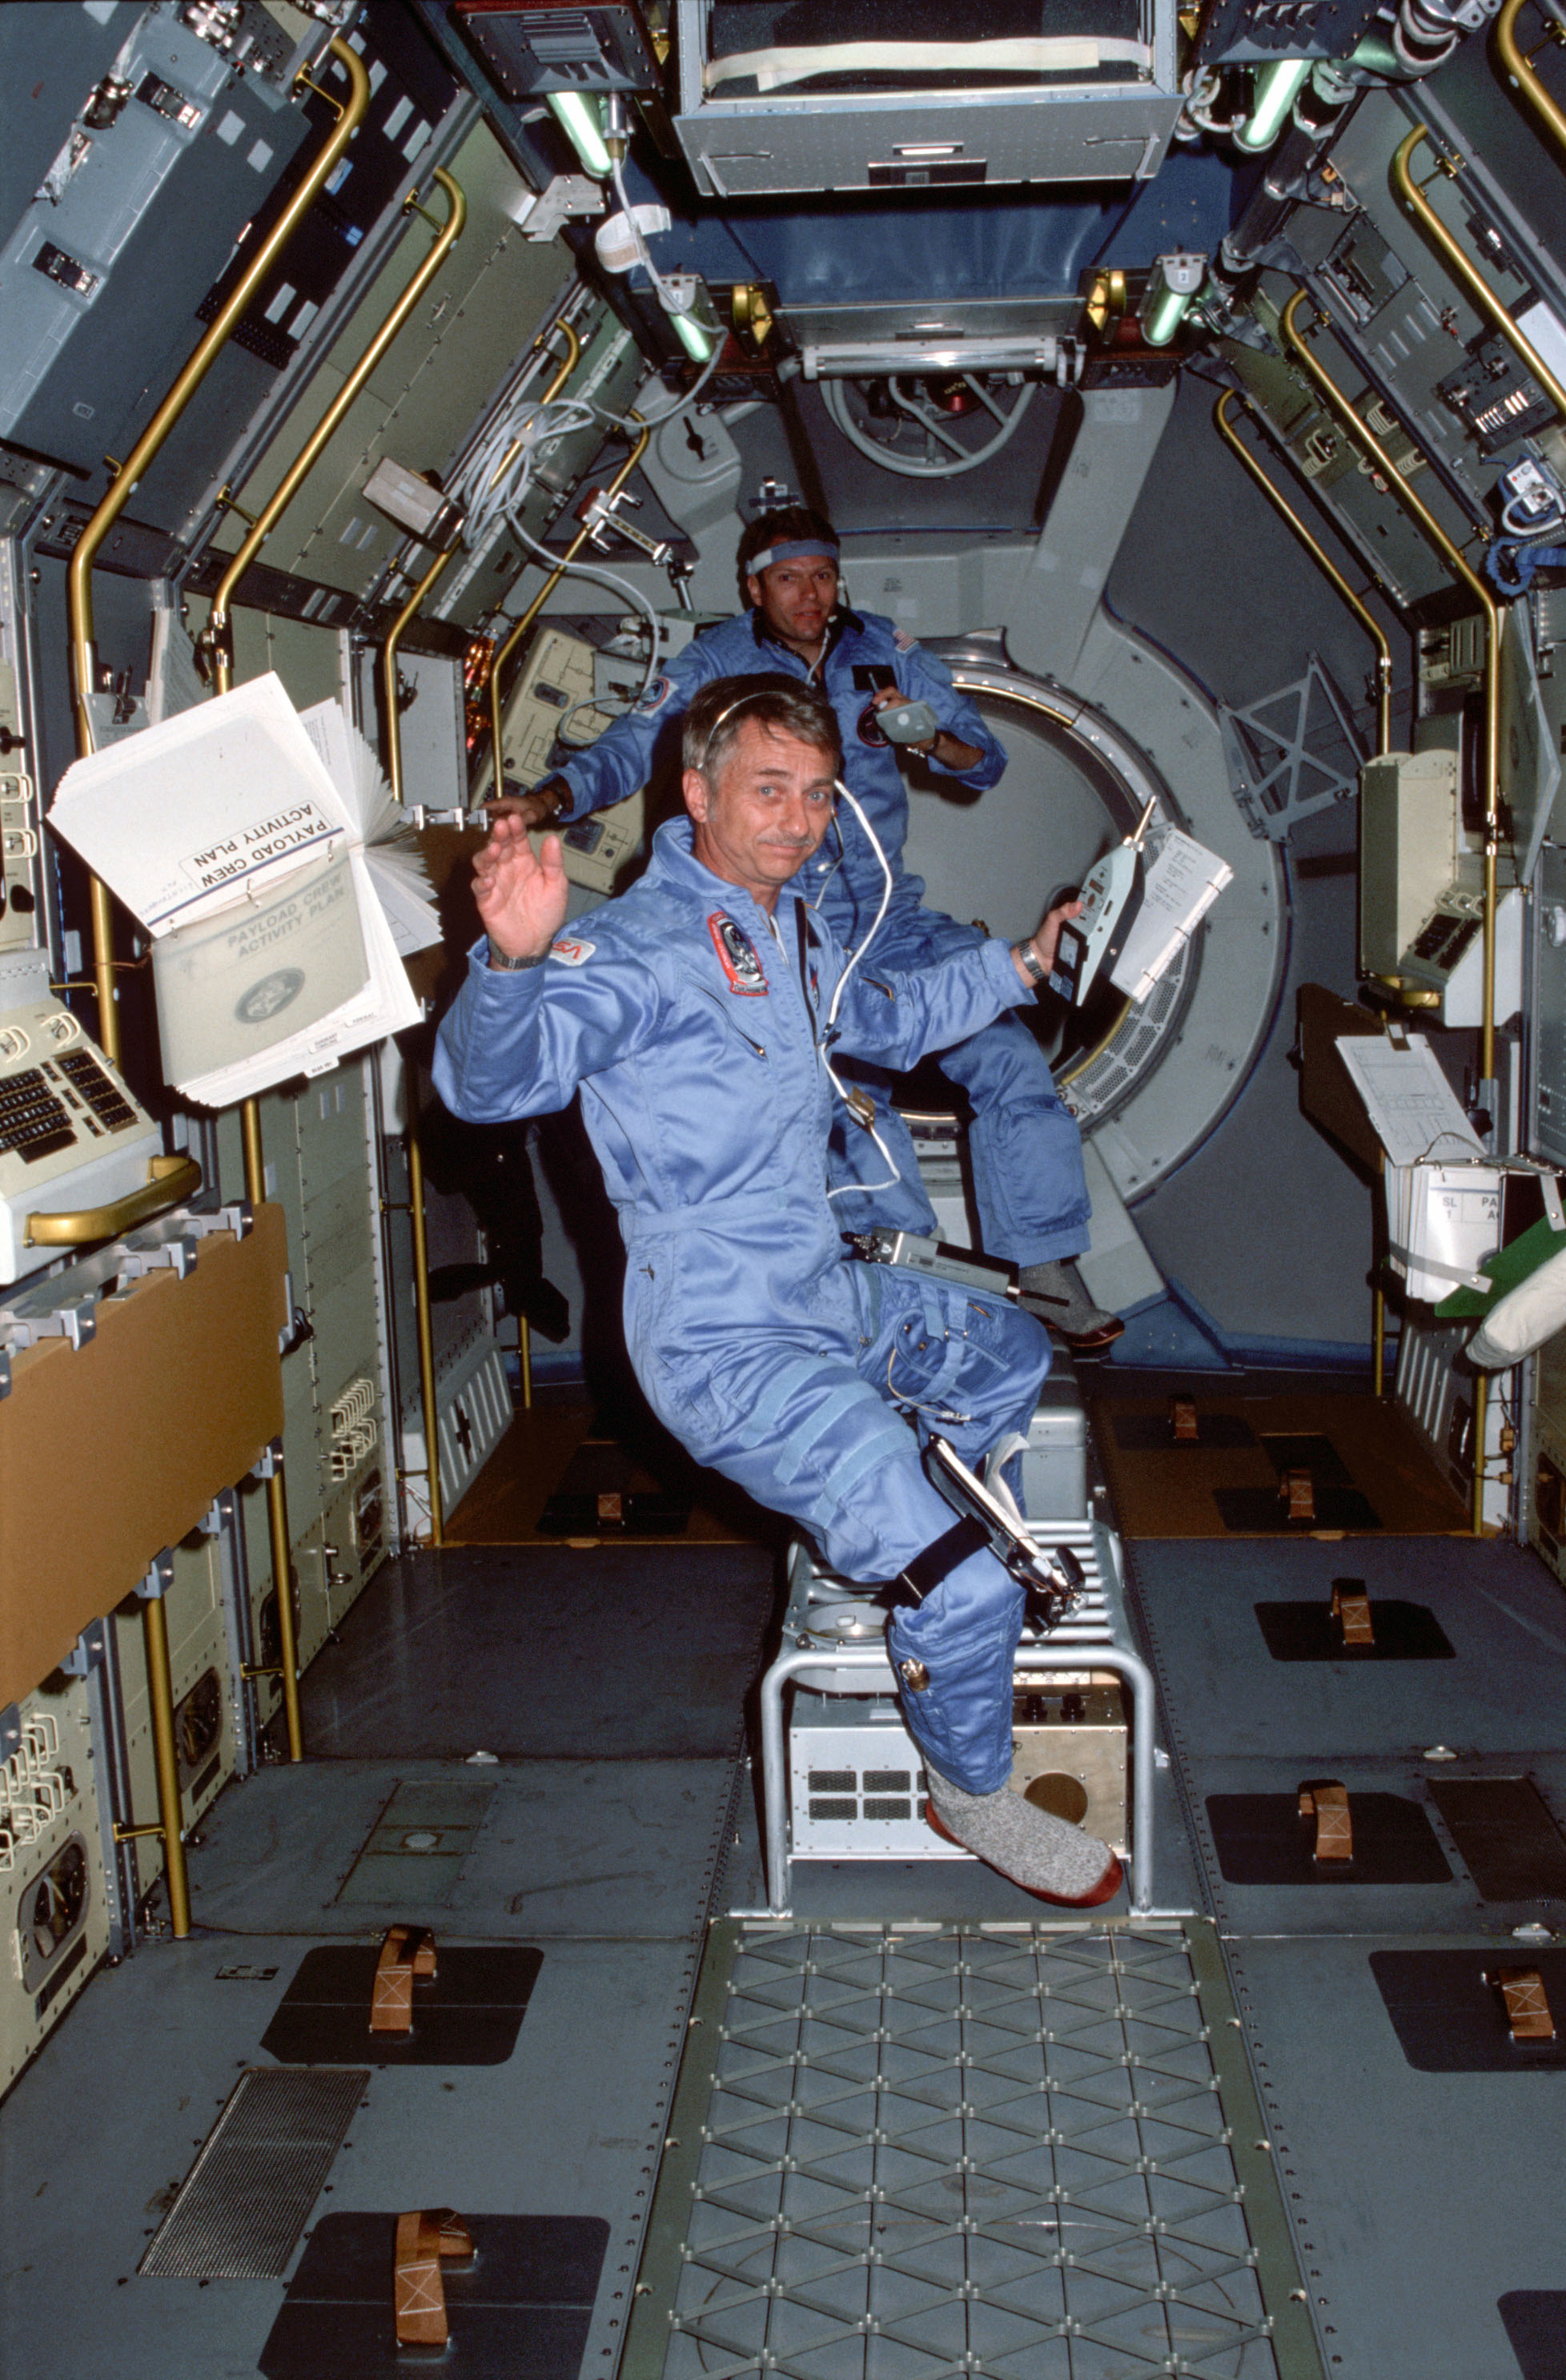 Garriott, front, and Lichtenberg at work in the Spacelab module